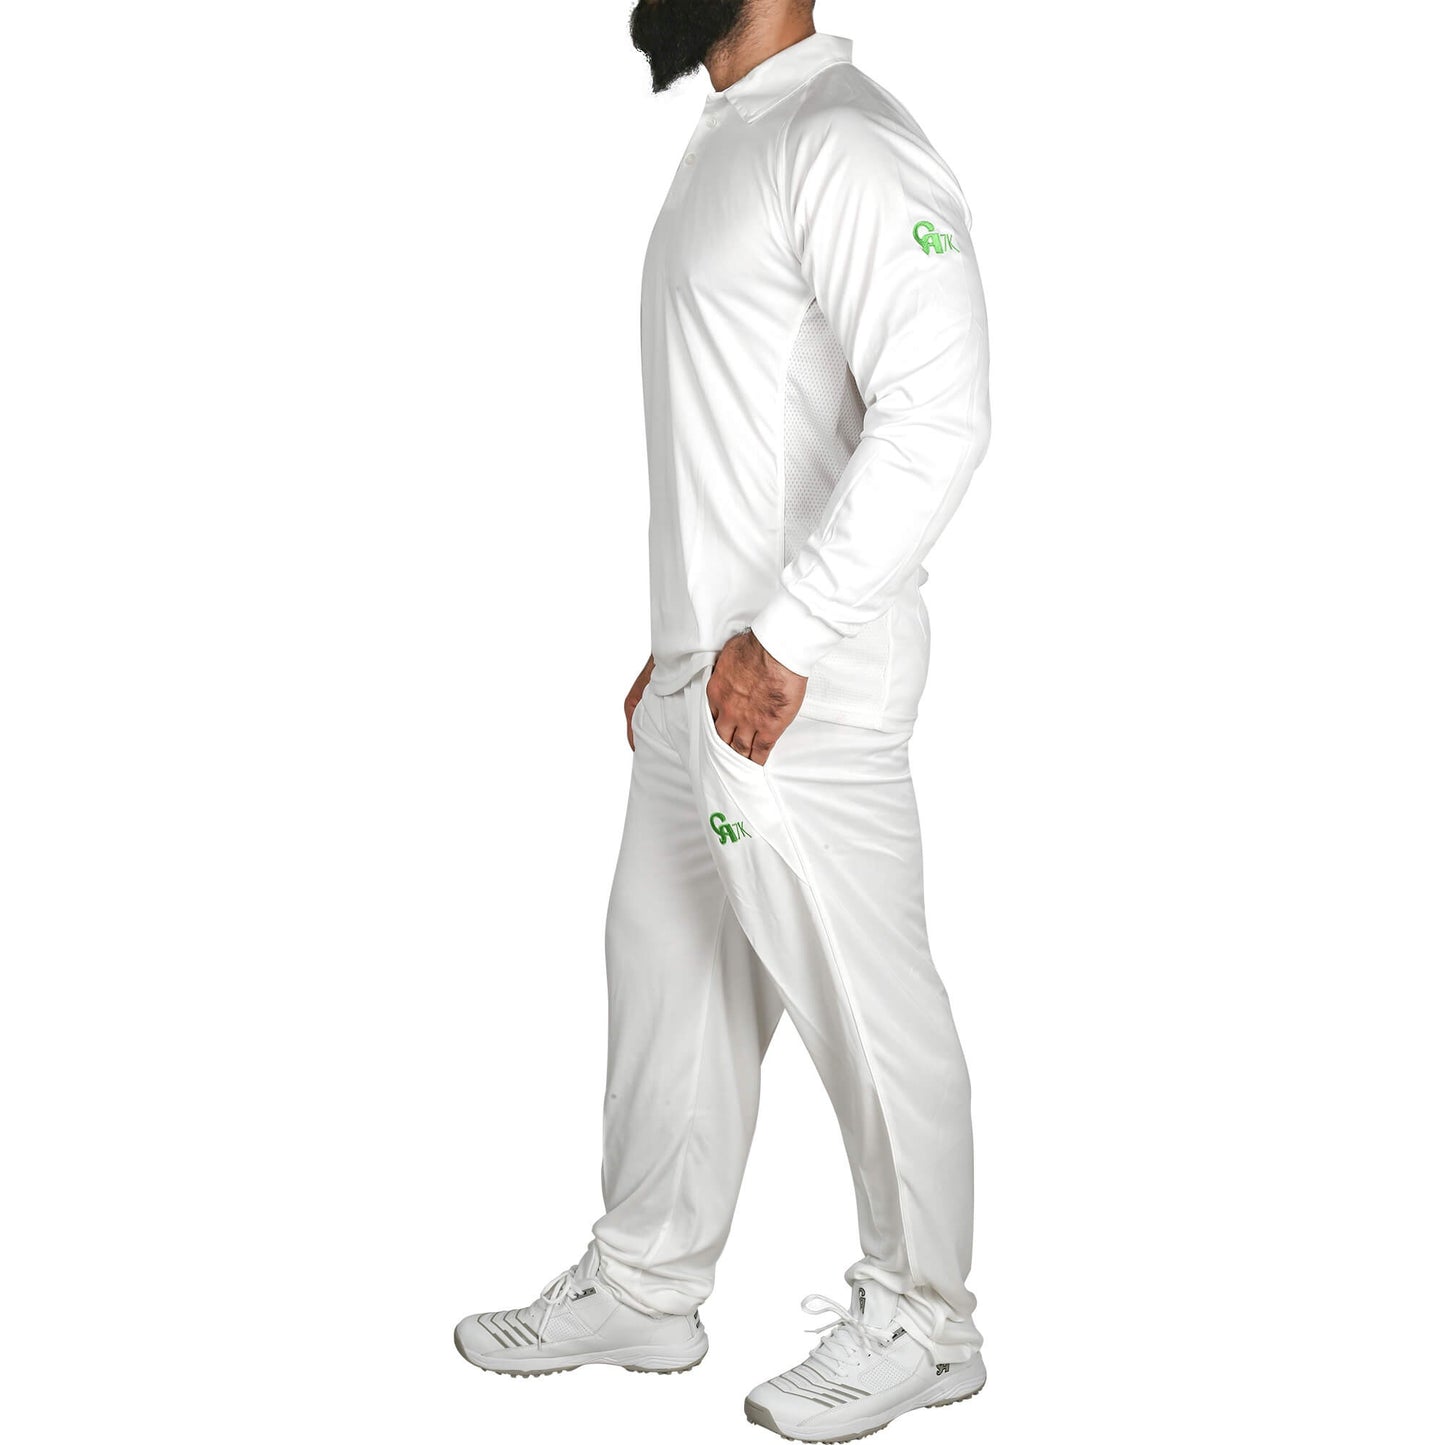 CA White Test Kit Shirt & Trouser